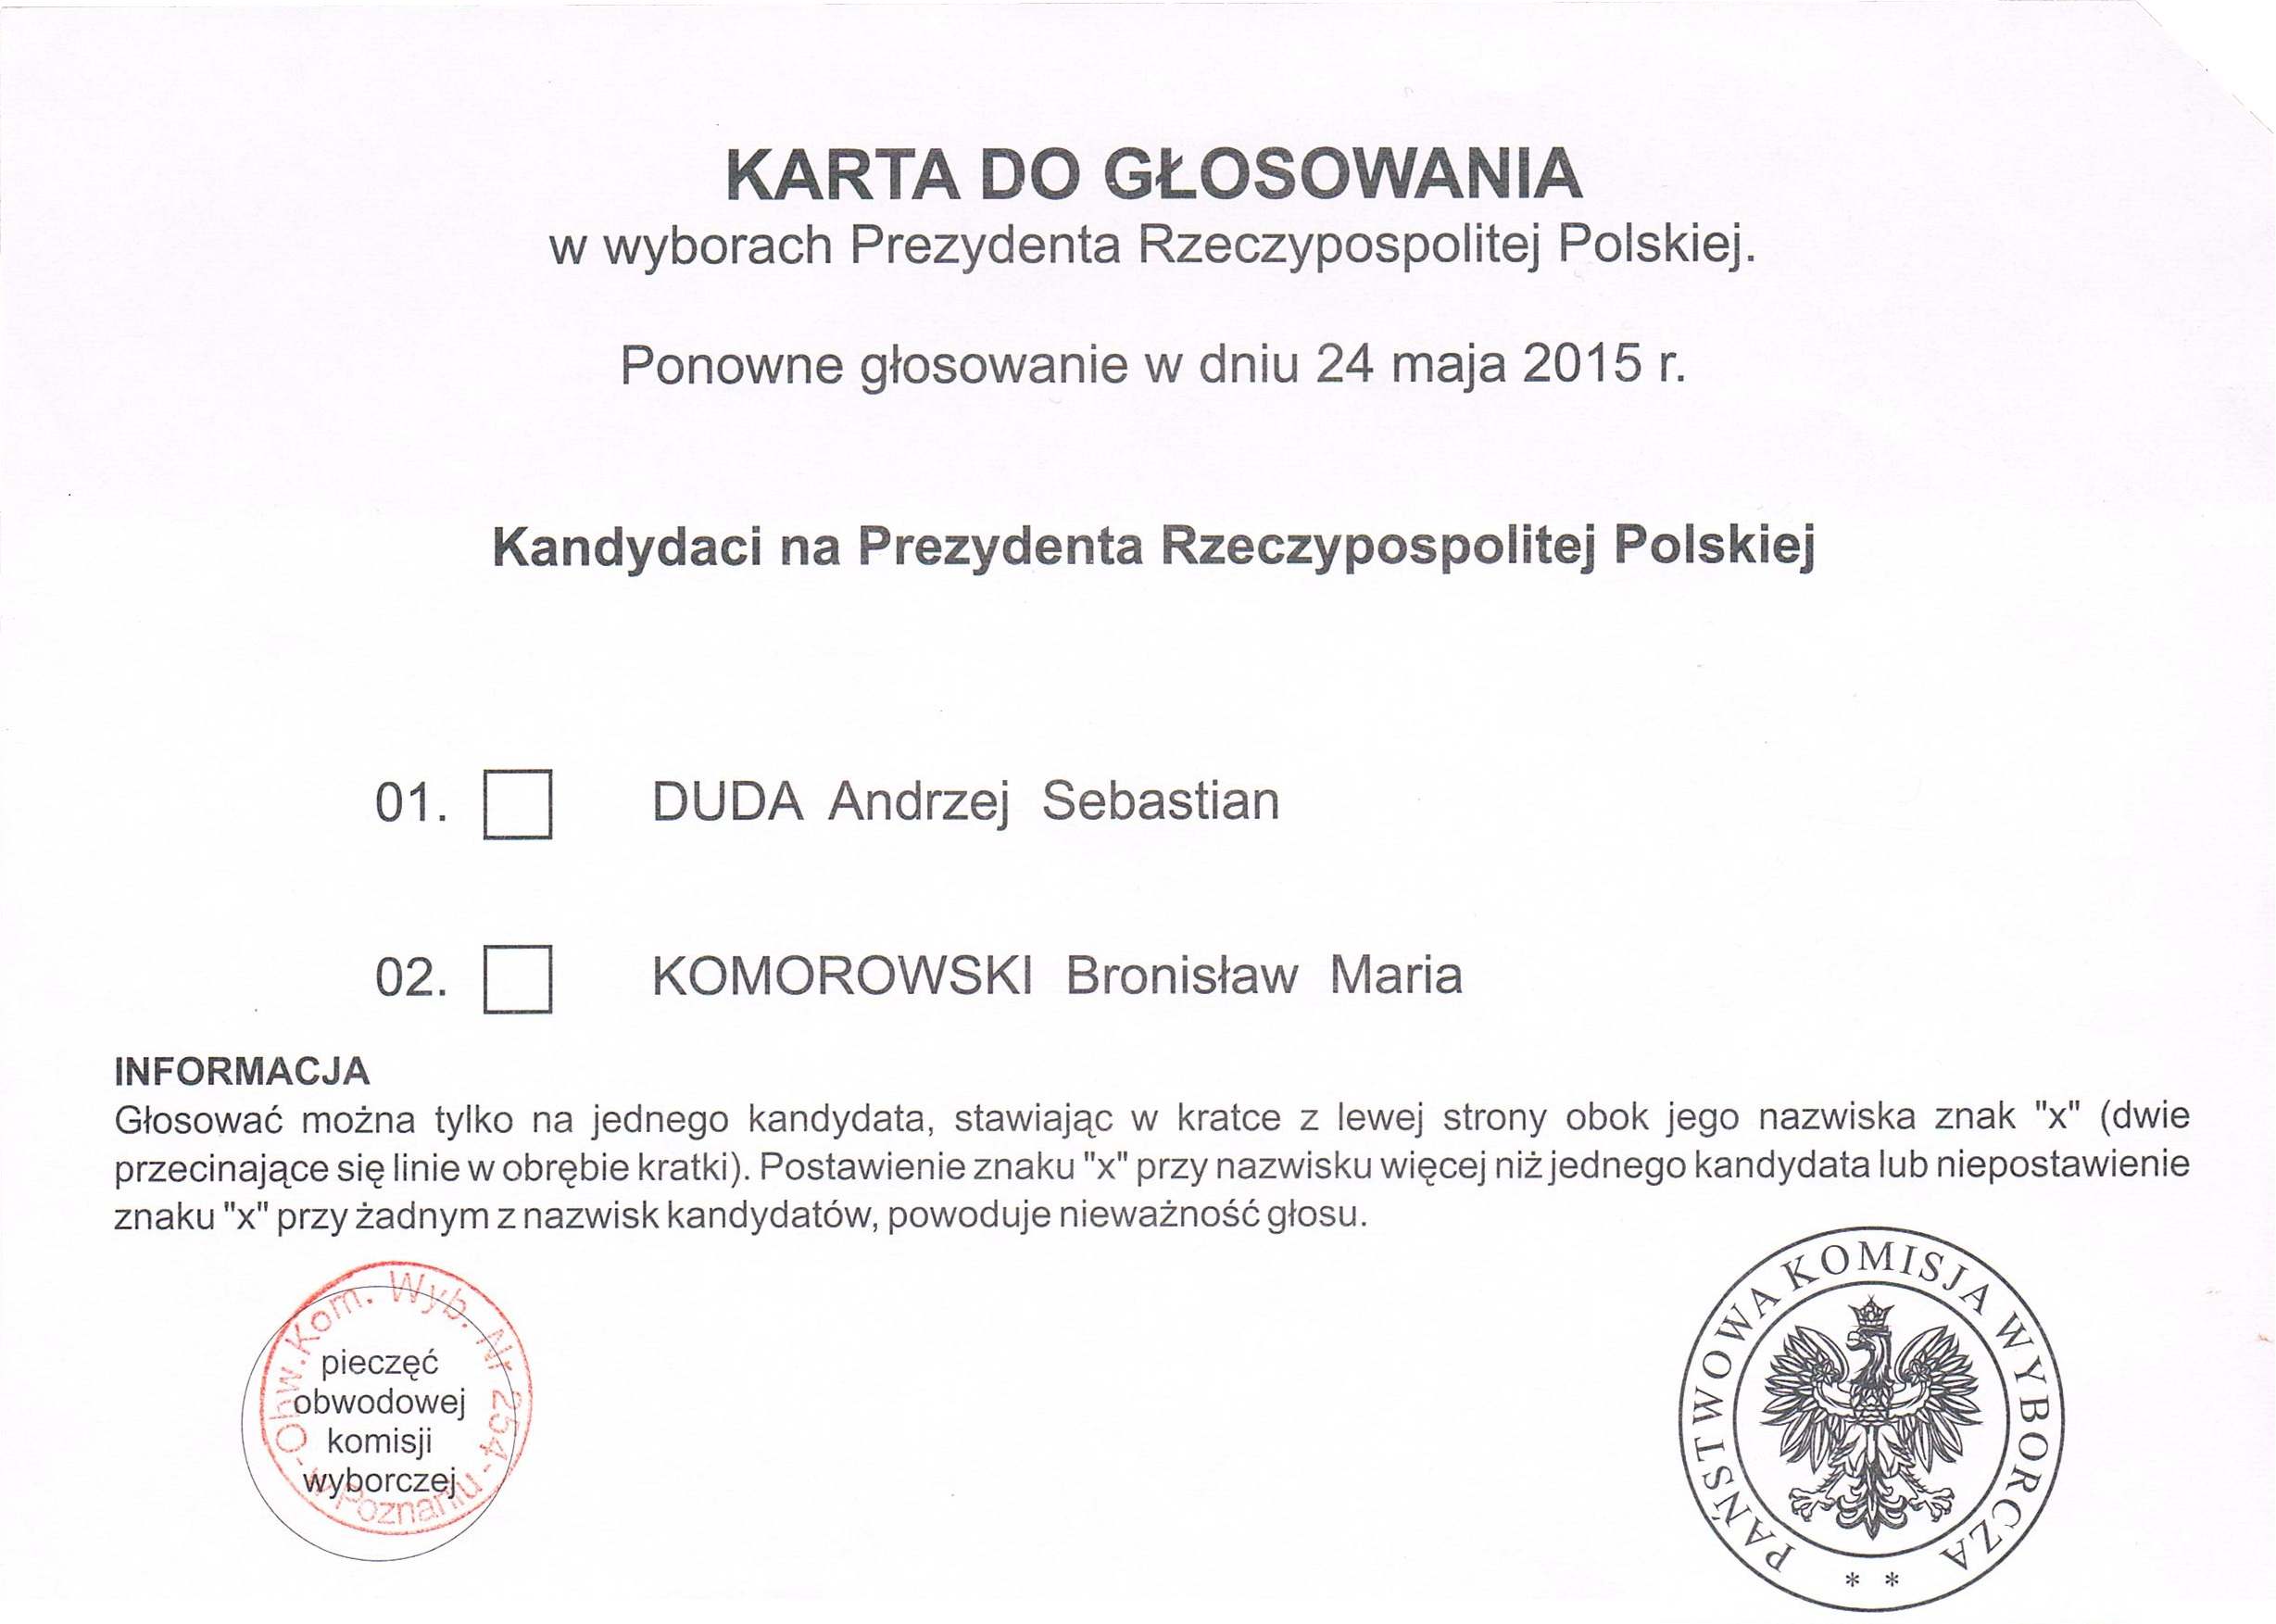 Zdjęcie 15. „Karta do głosowania w wyborach Prezydenta Rzeczypospolitej Polskiej”